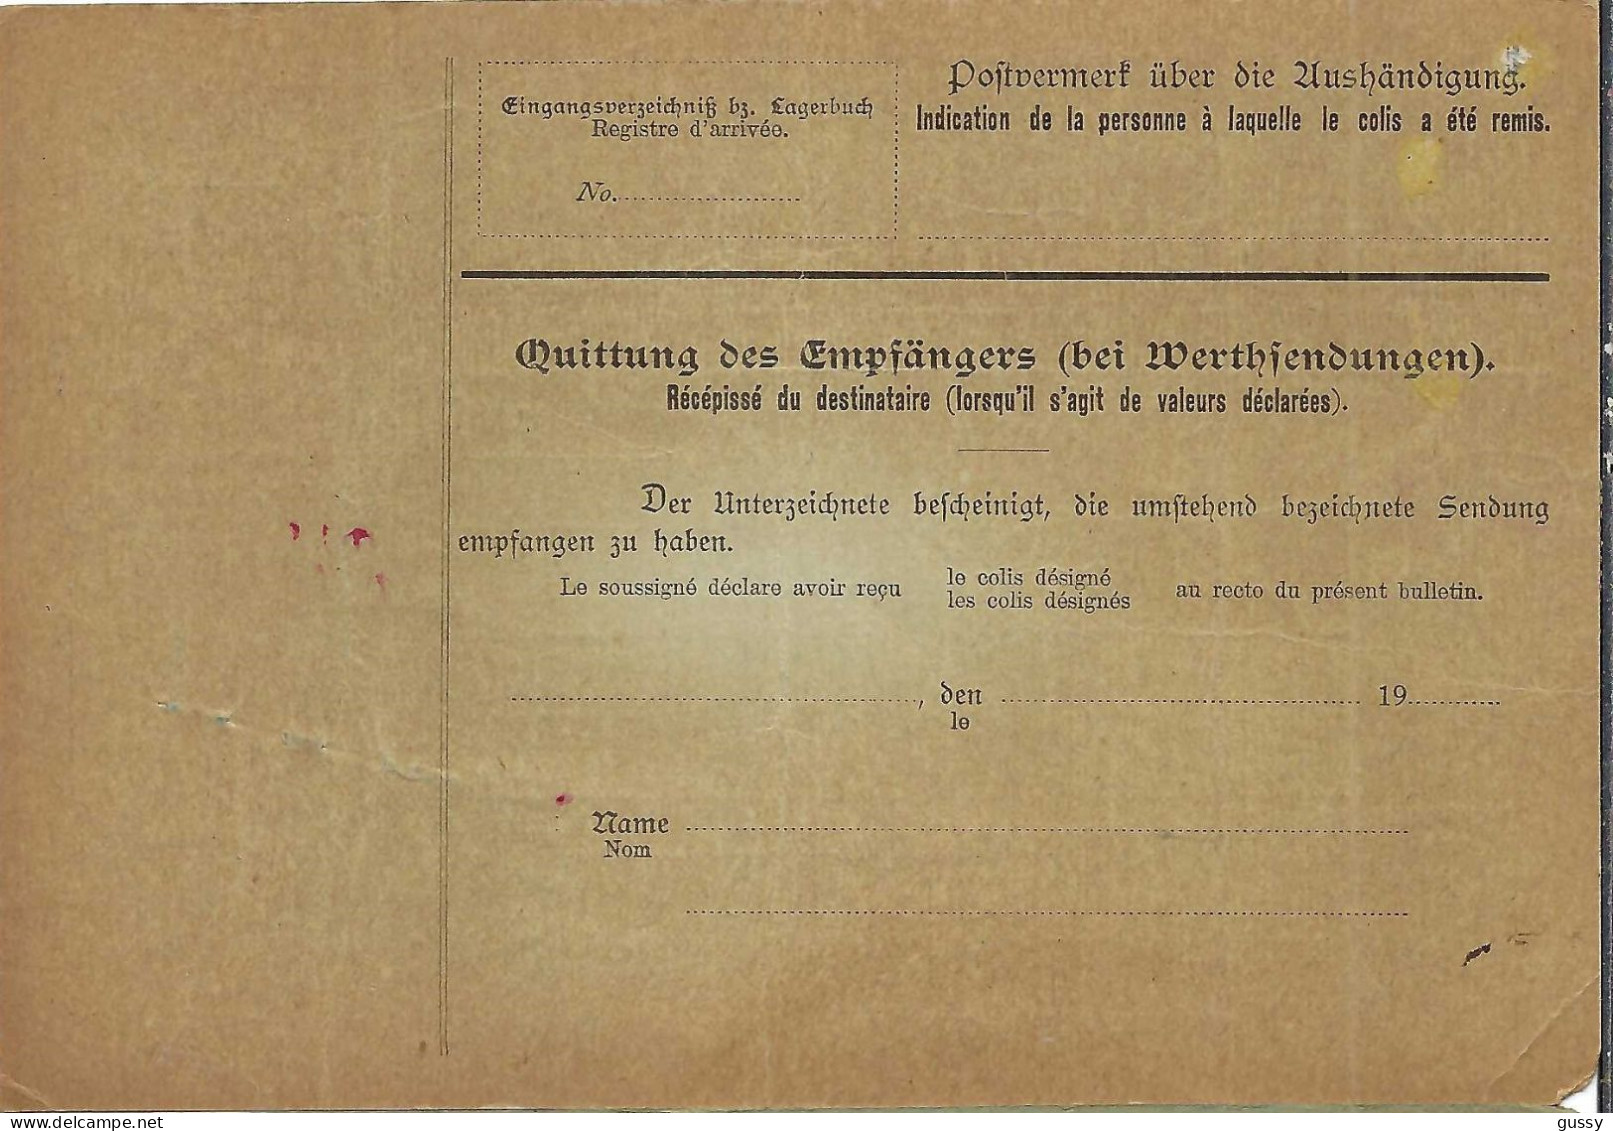 ALLEMAGNE Ca.1904: Bulletin D'Expédition De Berlin Pour Genève (Suisse) - Lettres & Documents